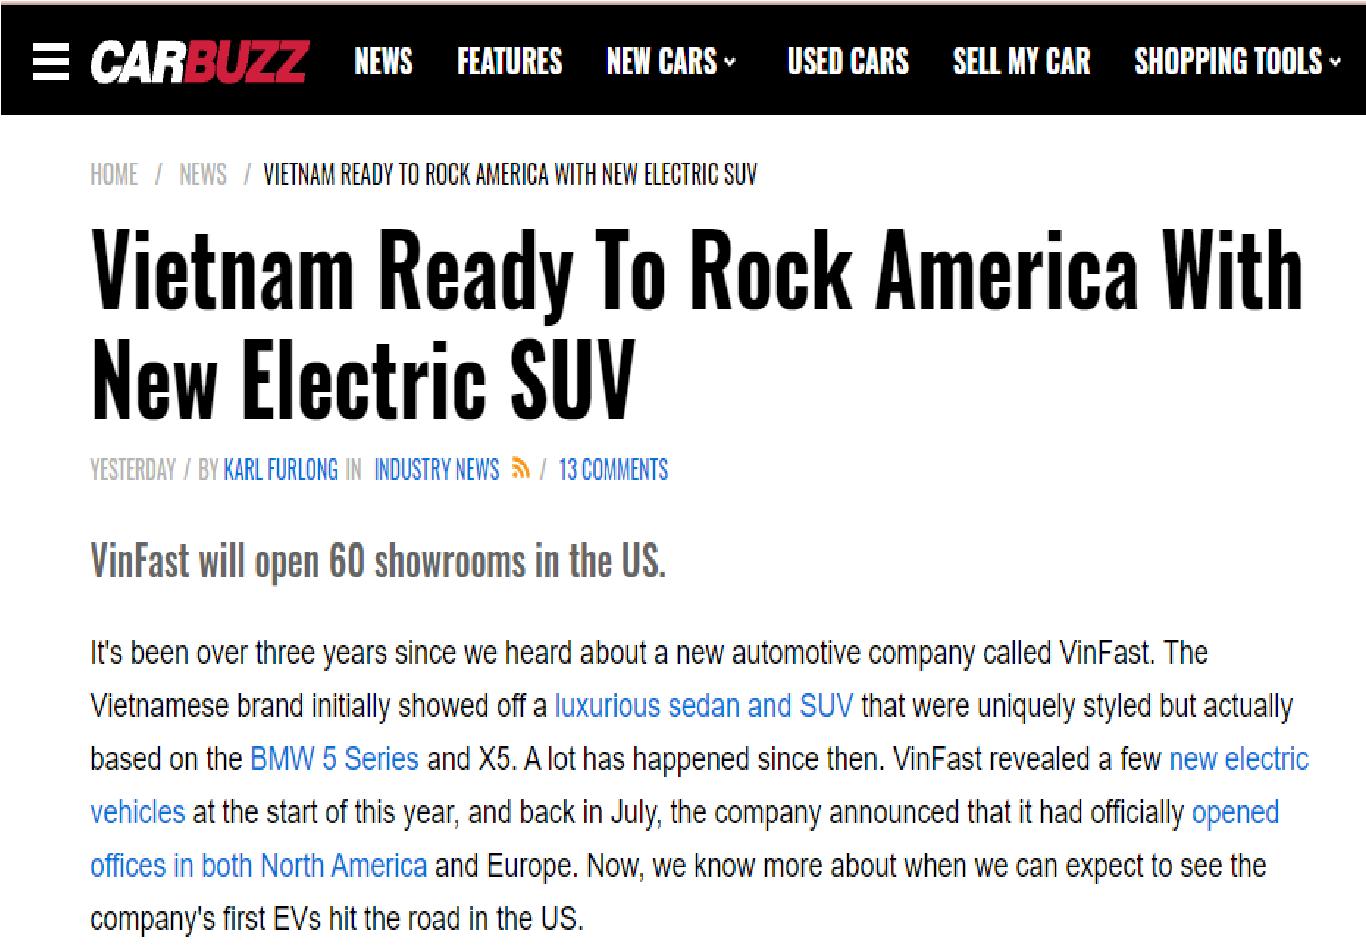 Chuyên trang ô tô Carbuzz giật tiêu đề “VinFast đã sẵn sàng để bùng nổ tại Mỹ”